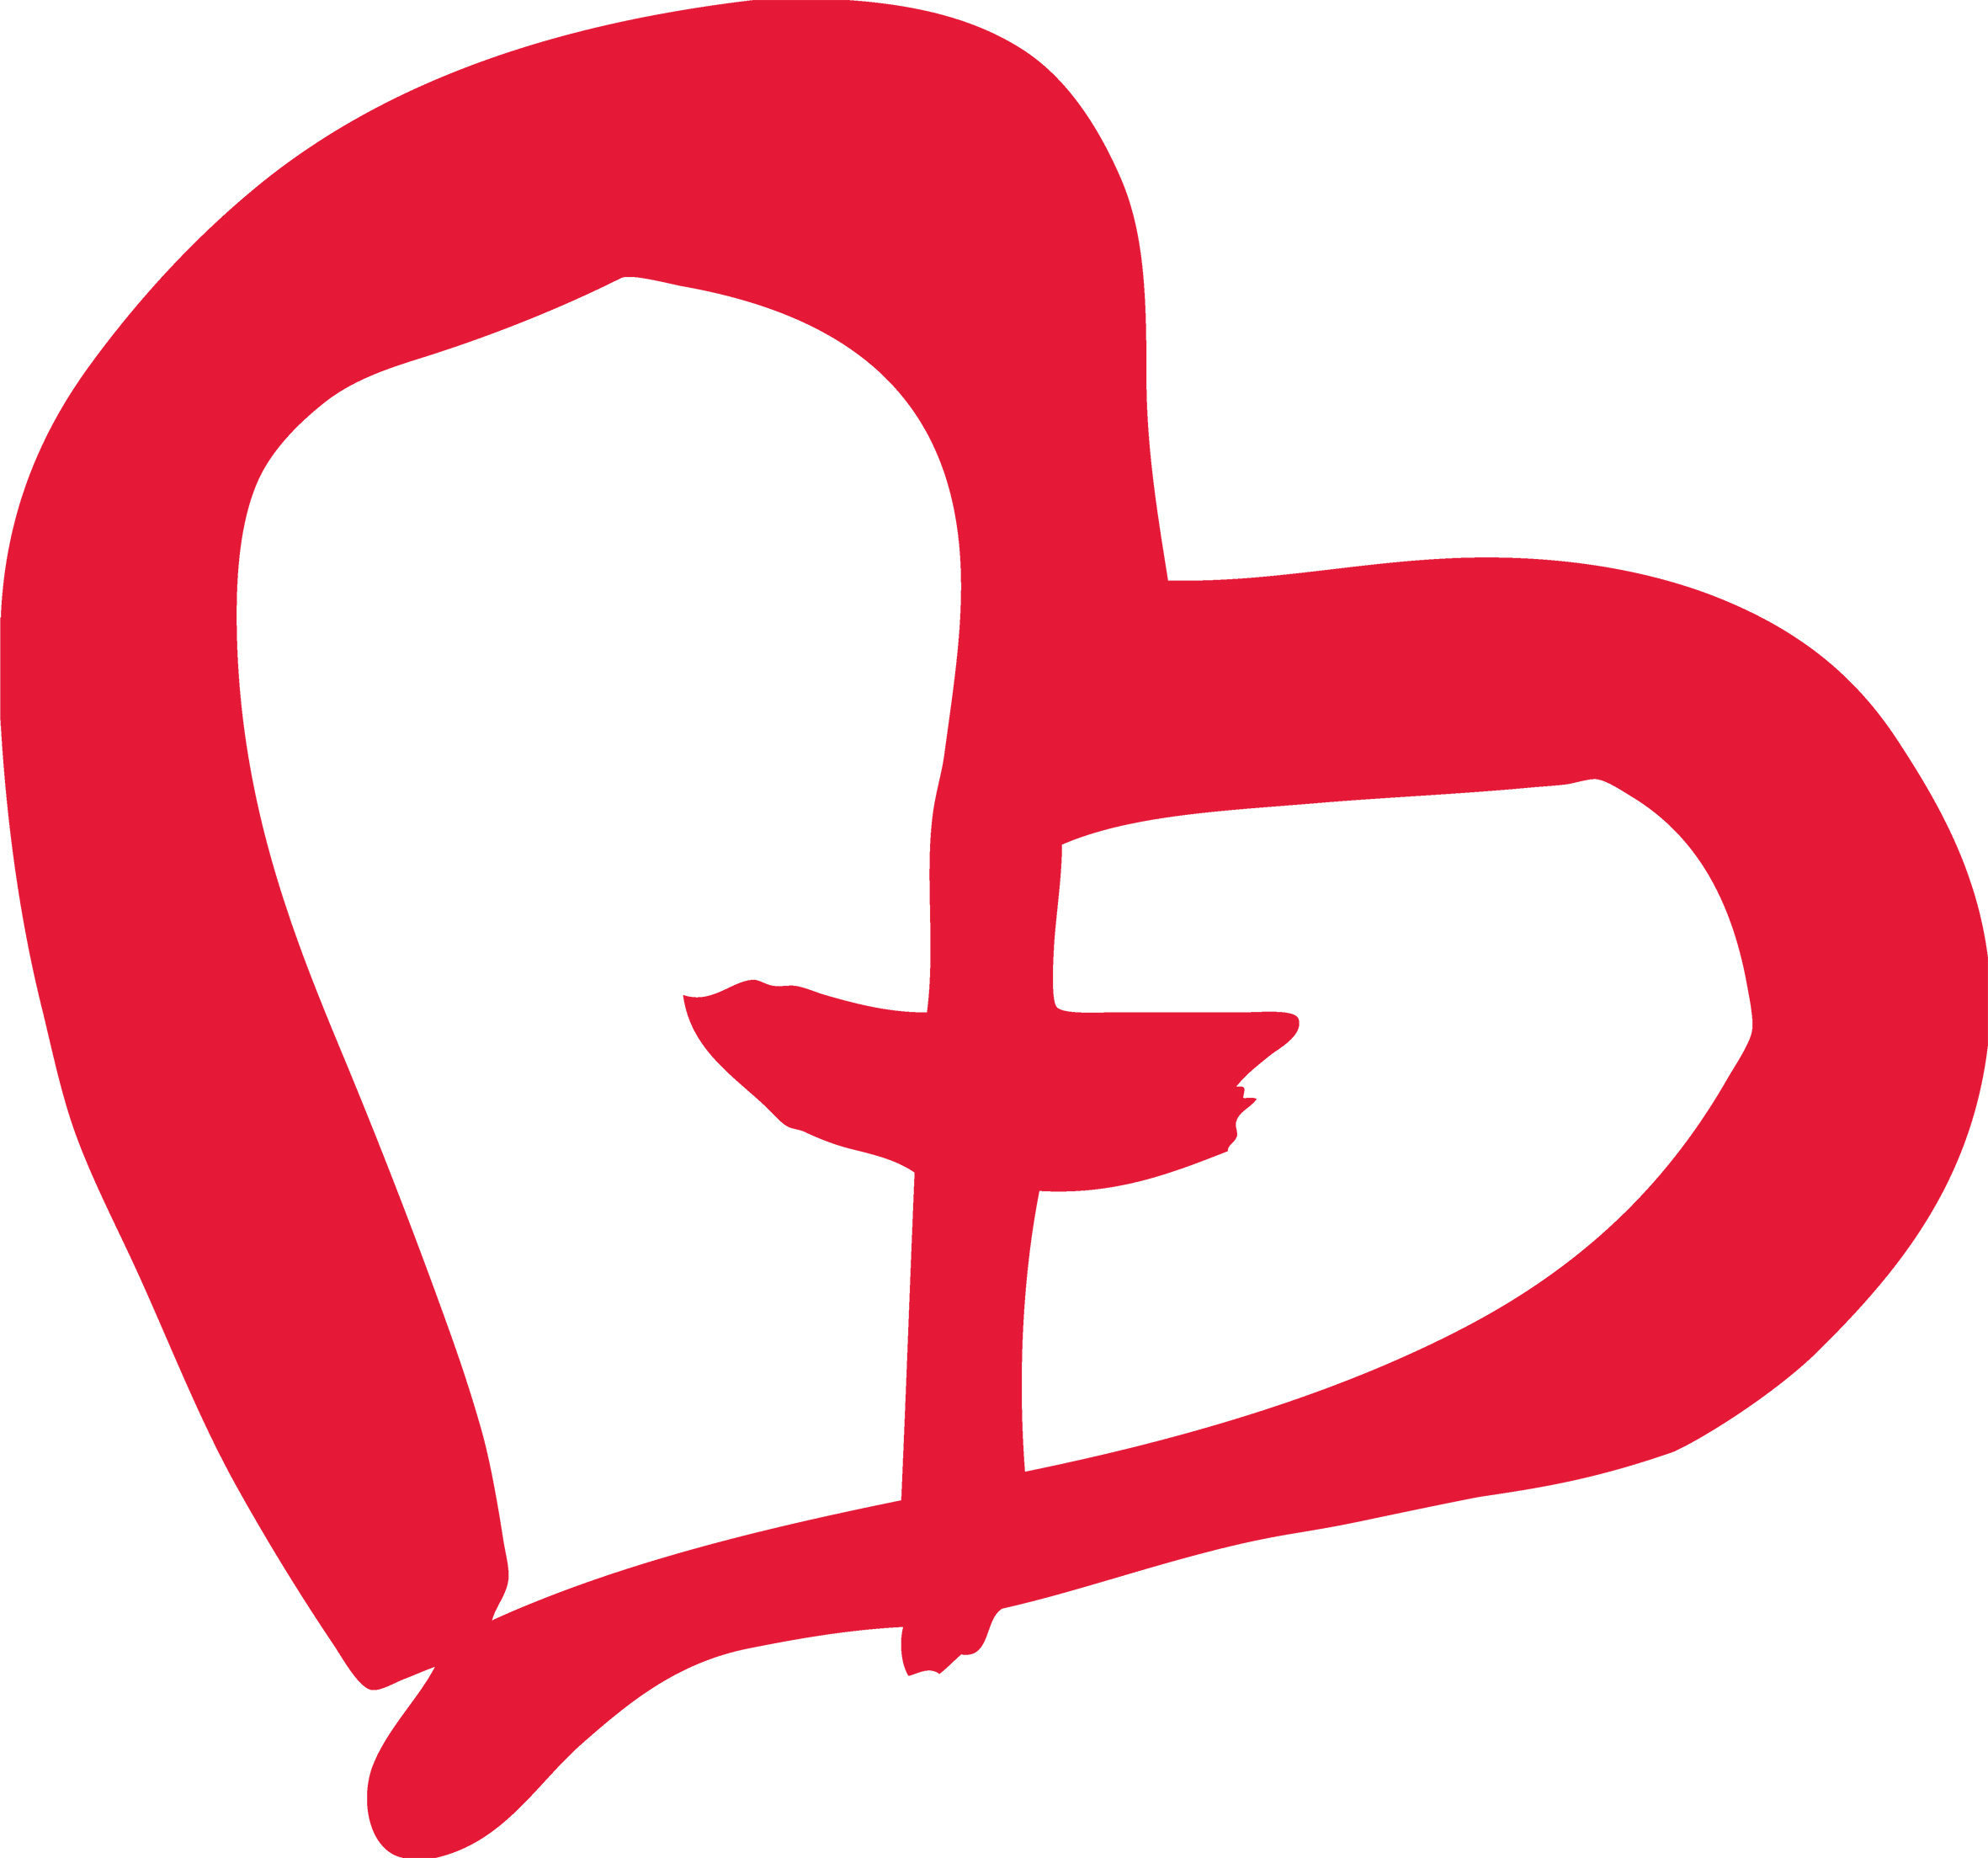 Yhteivastuu-keräyksen sydän-logo.